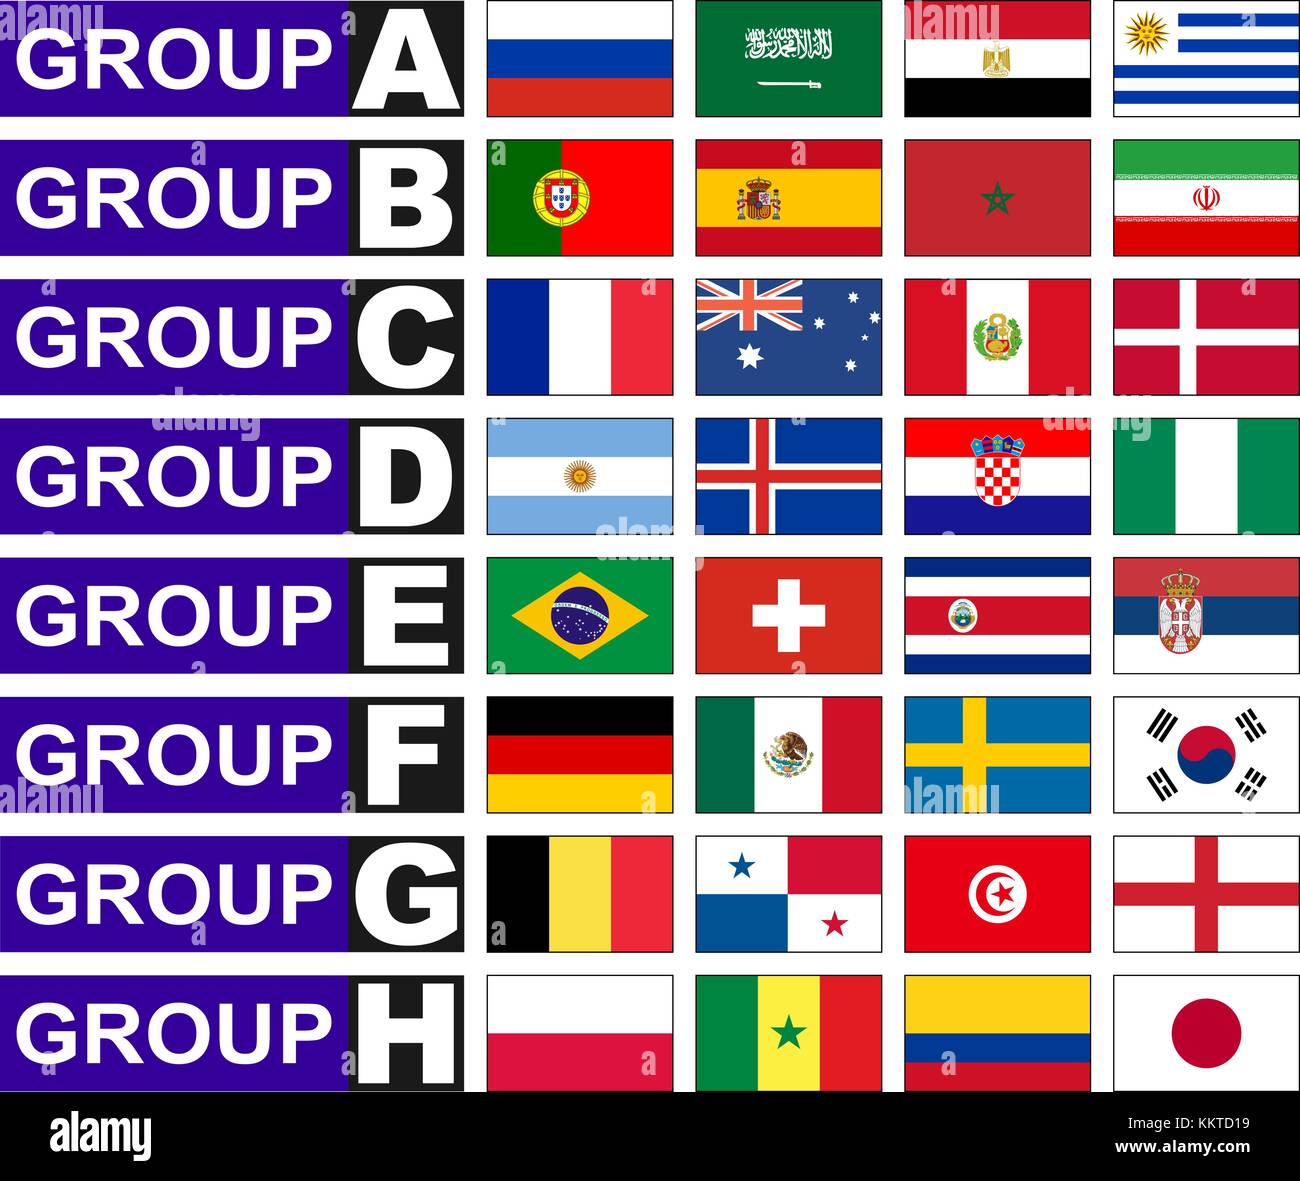 Flaggen der Länder, die zu den Gruppen der Fußball